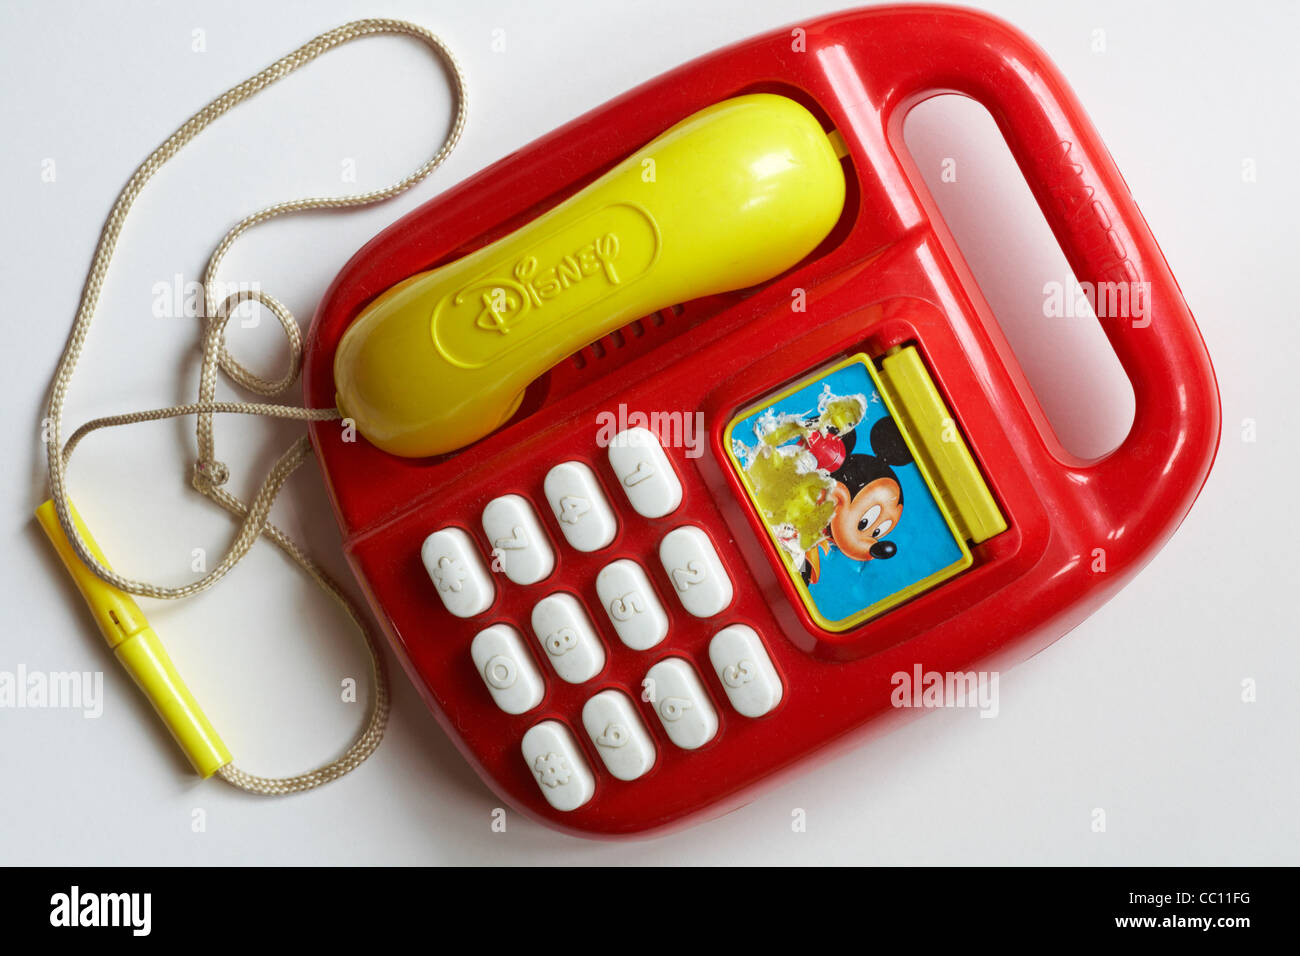 Telefono giocattolo in plastica, telefono per bambini Red Mattel